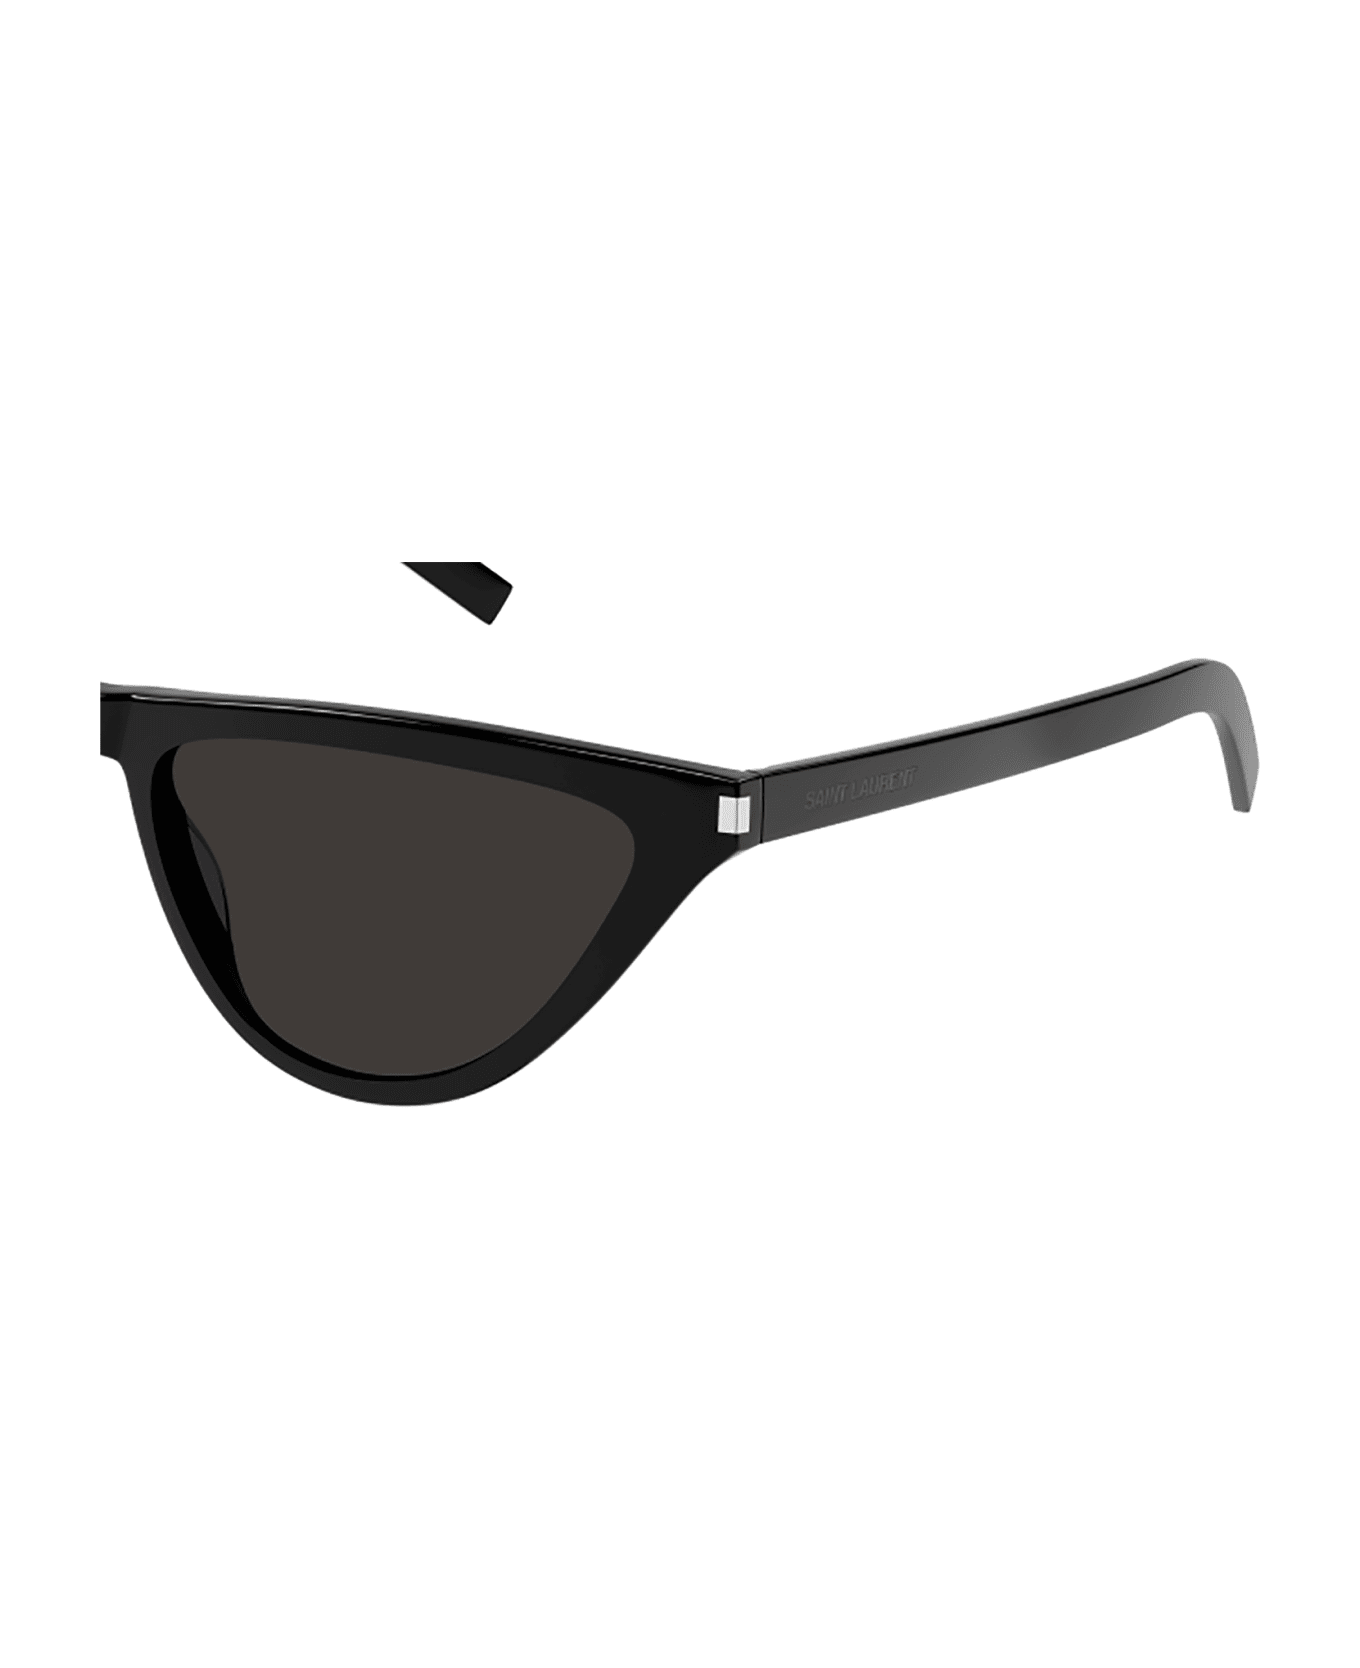 Saint Laurent Eyewear SL 550 SLIM Sunglasses - Black Black Black